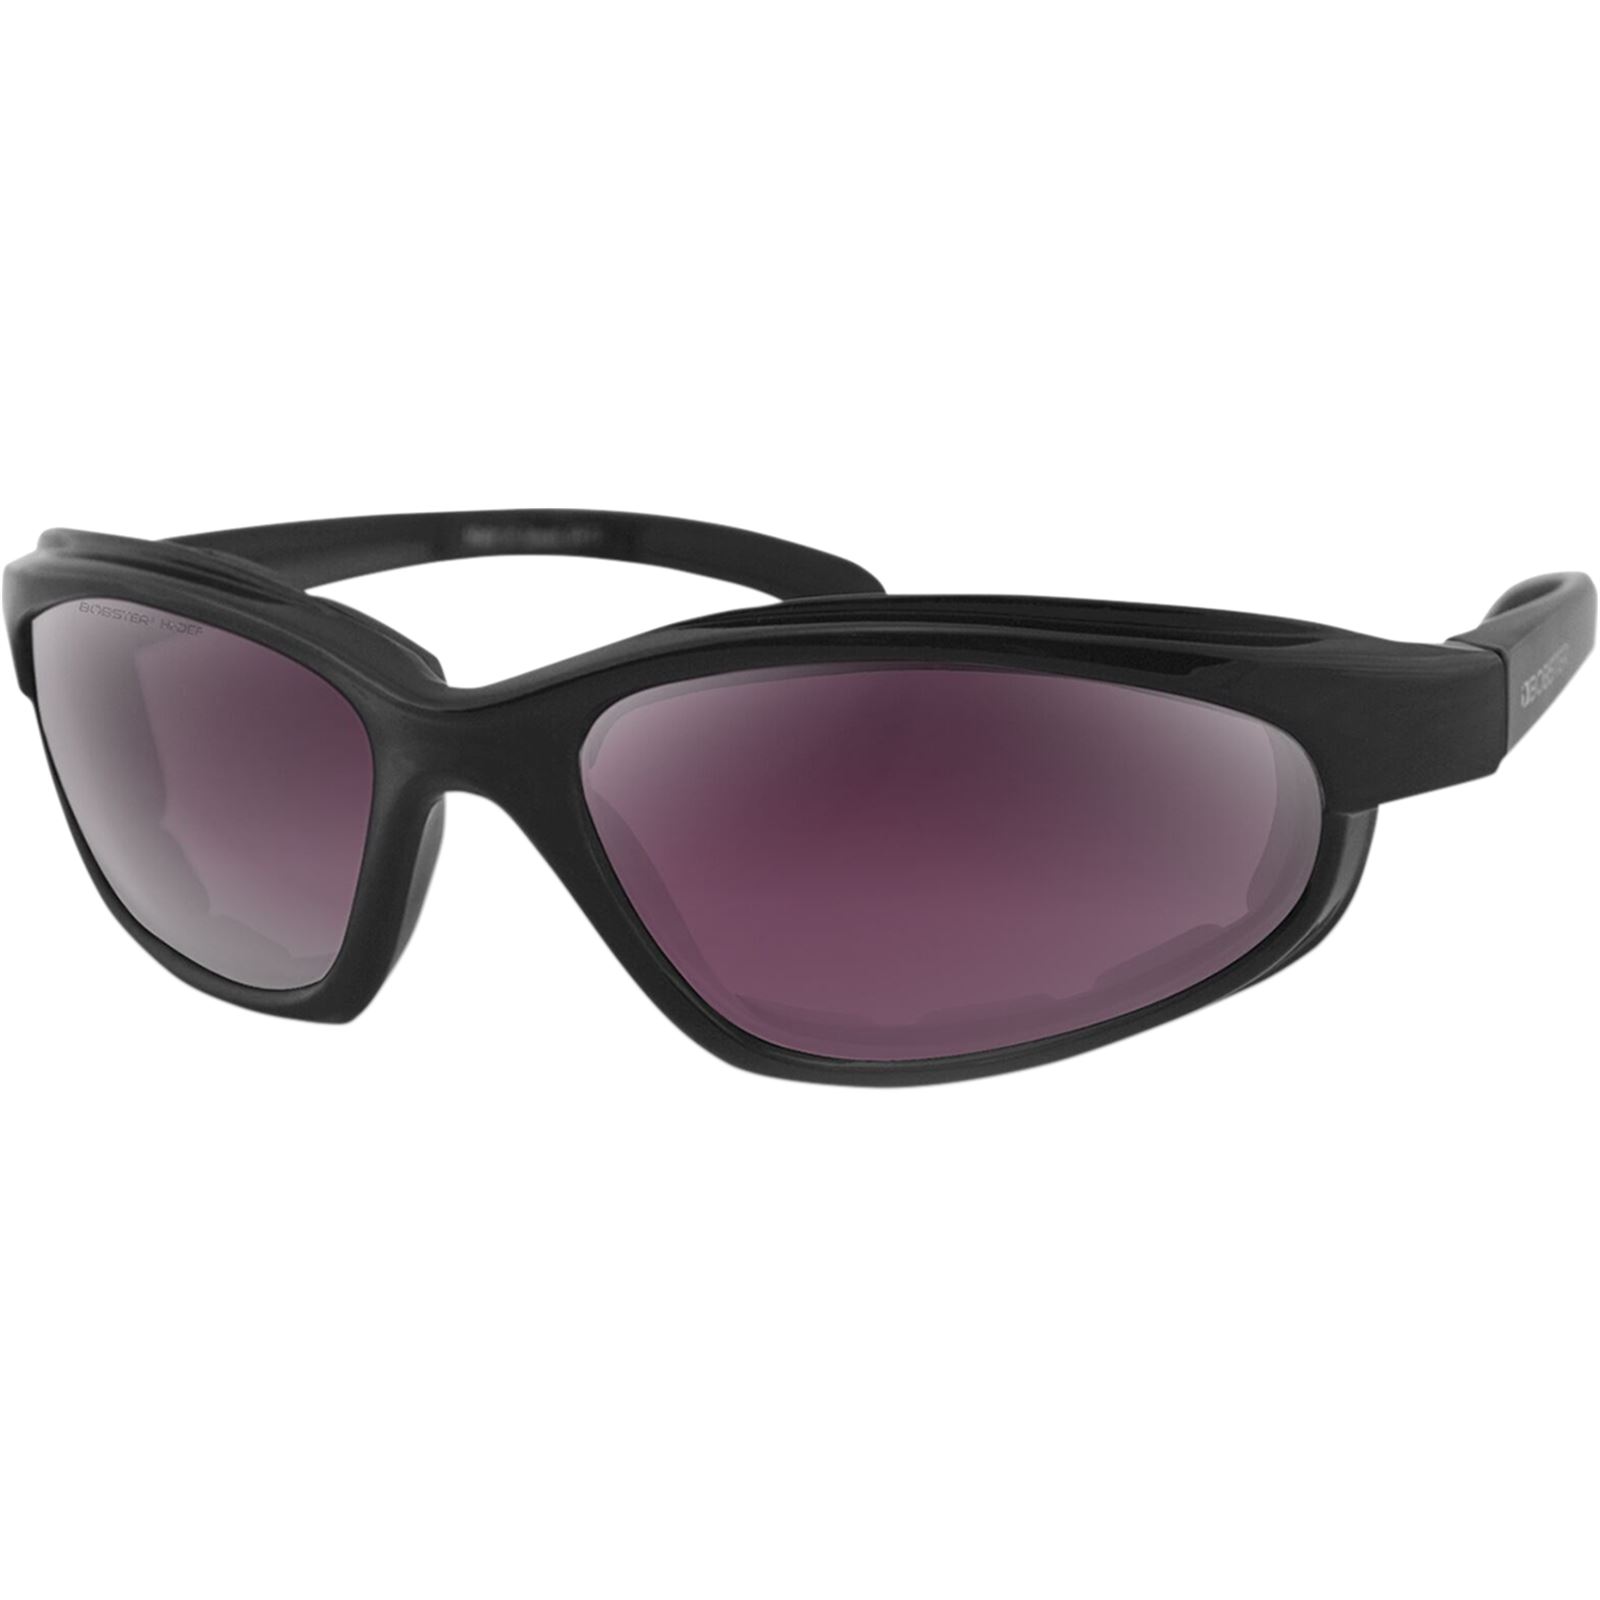 Bobster Fat Boy Sunglasses - Matte Black - Purple/Silver Revo